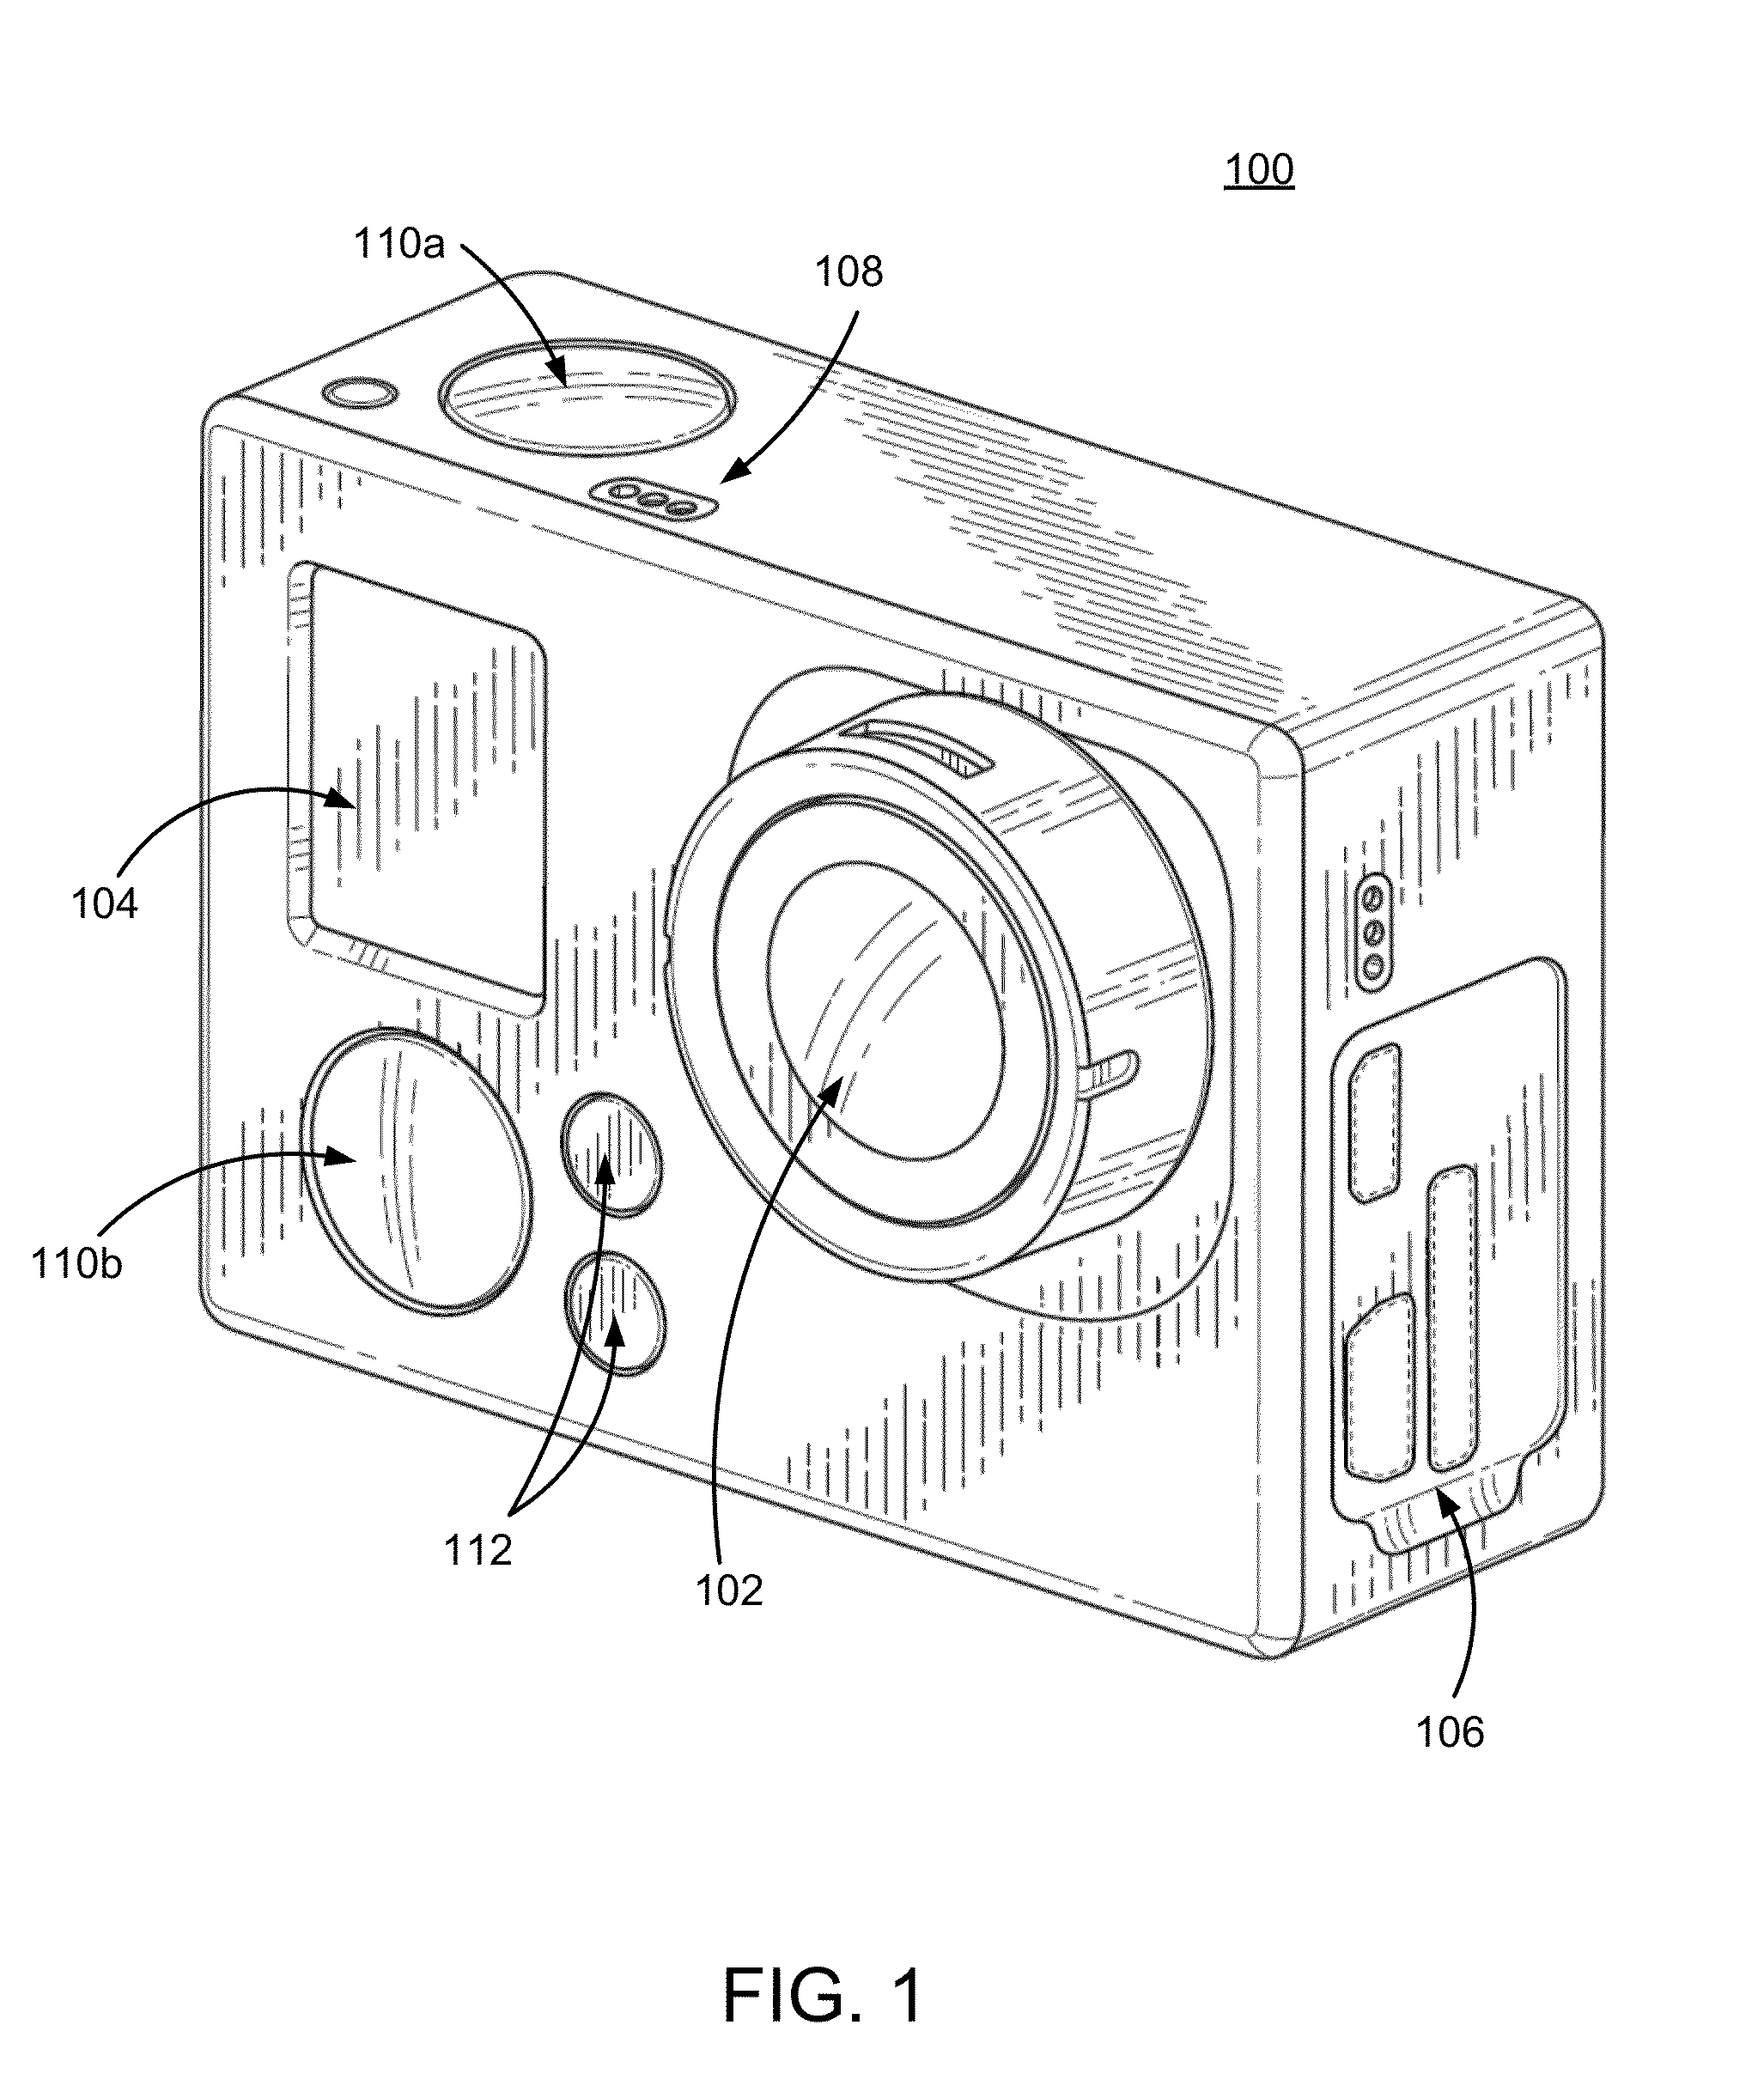 Camera mount vibration dampener